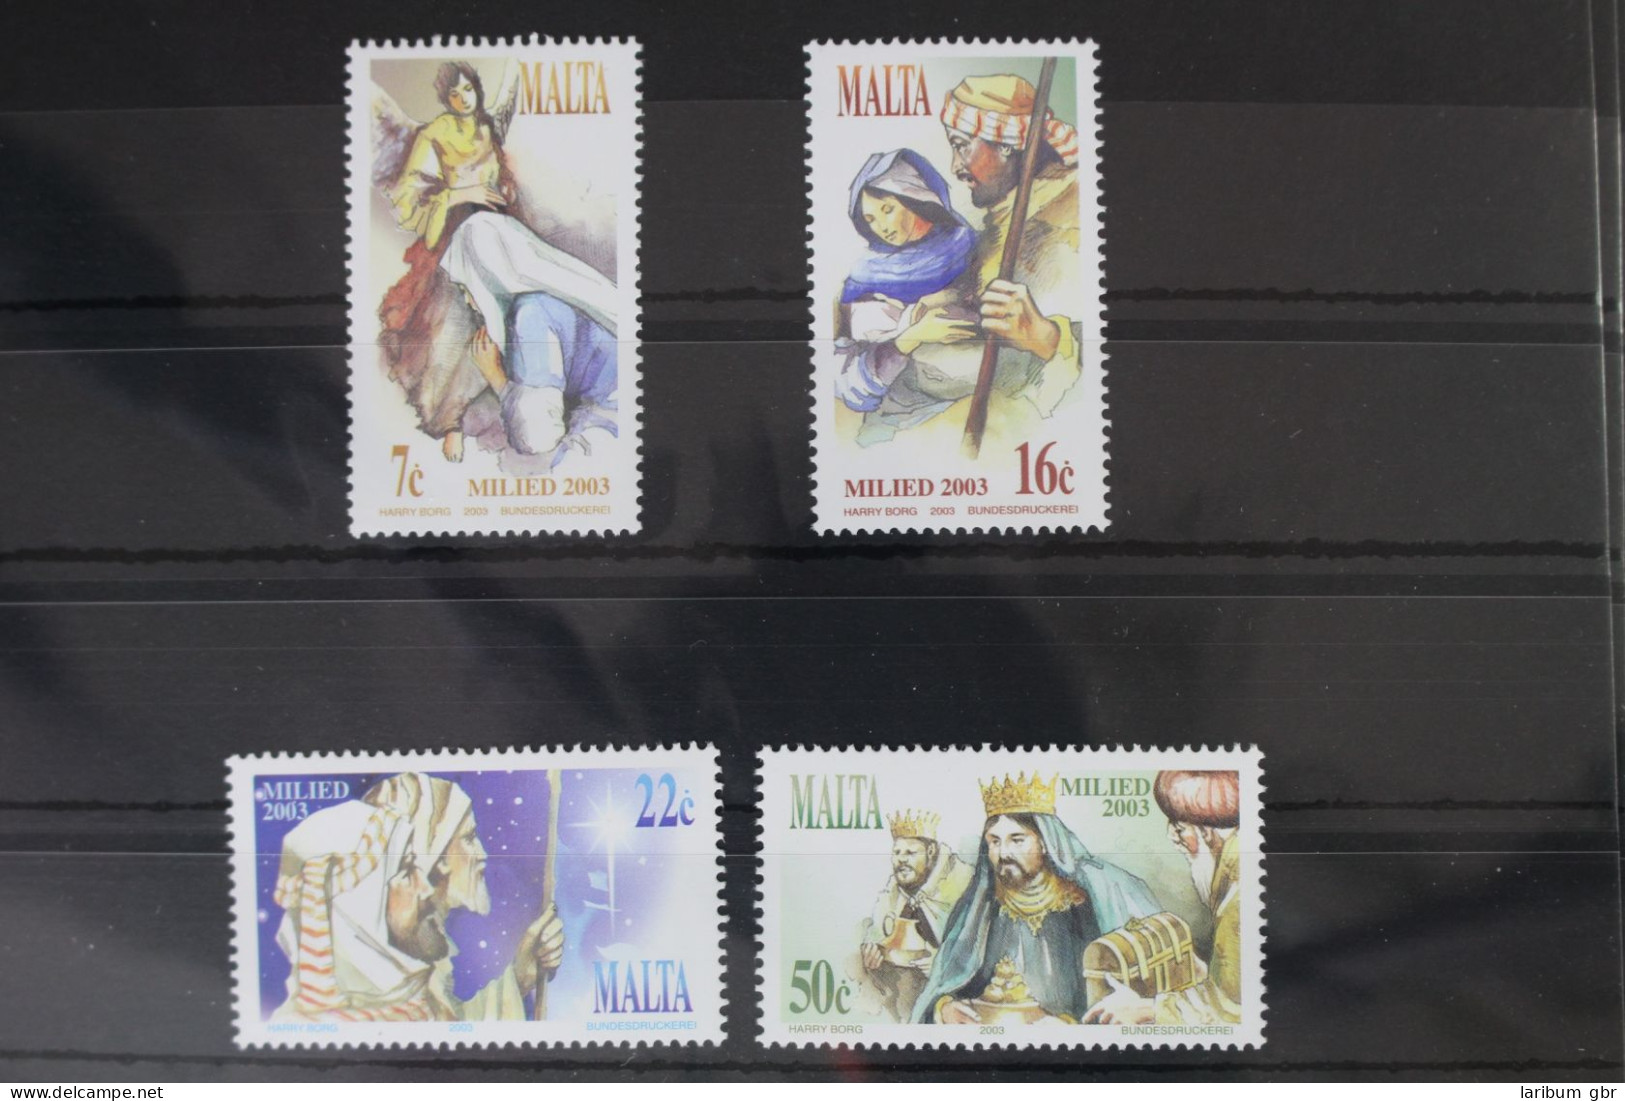 Malta 1310-1313 Postfrisch #WI147 - Malte